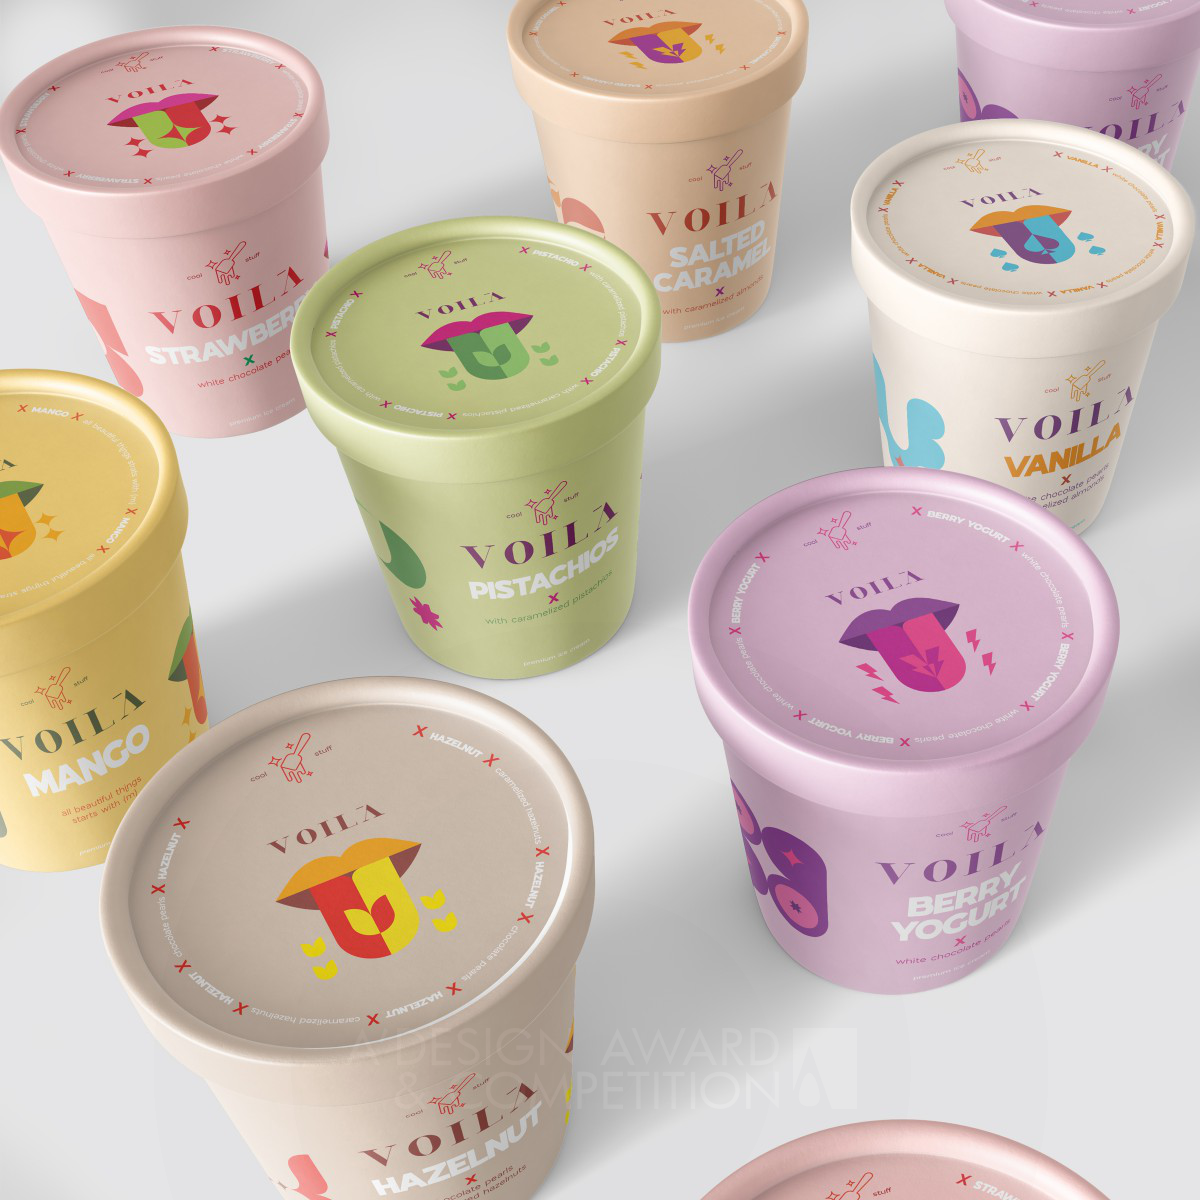 Voila Cool Stuff: Innovative Eisverpackungen mit einzigartigem Design